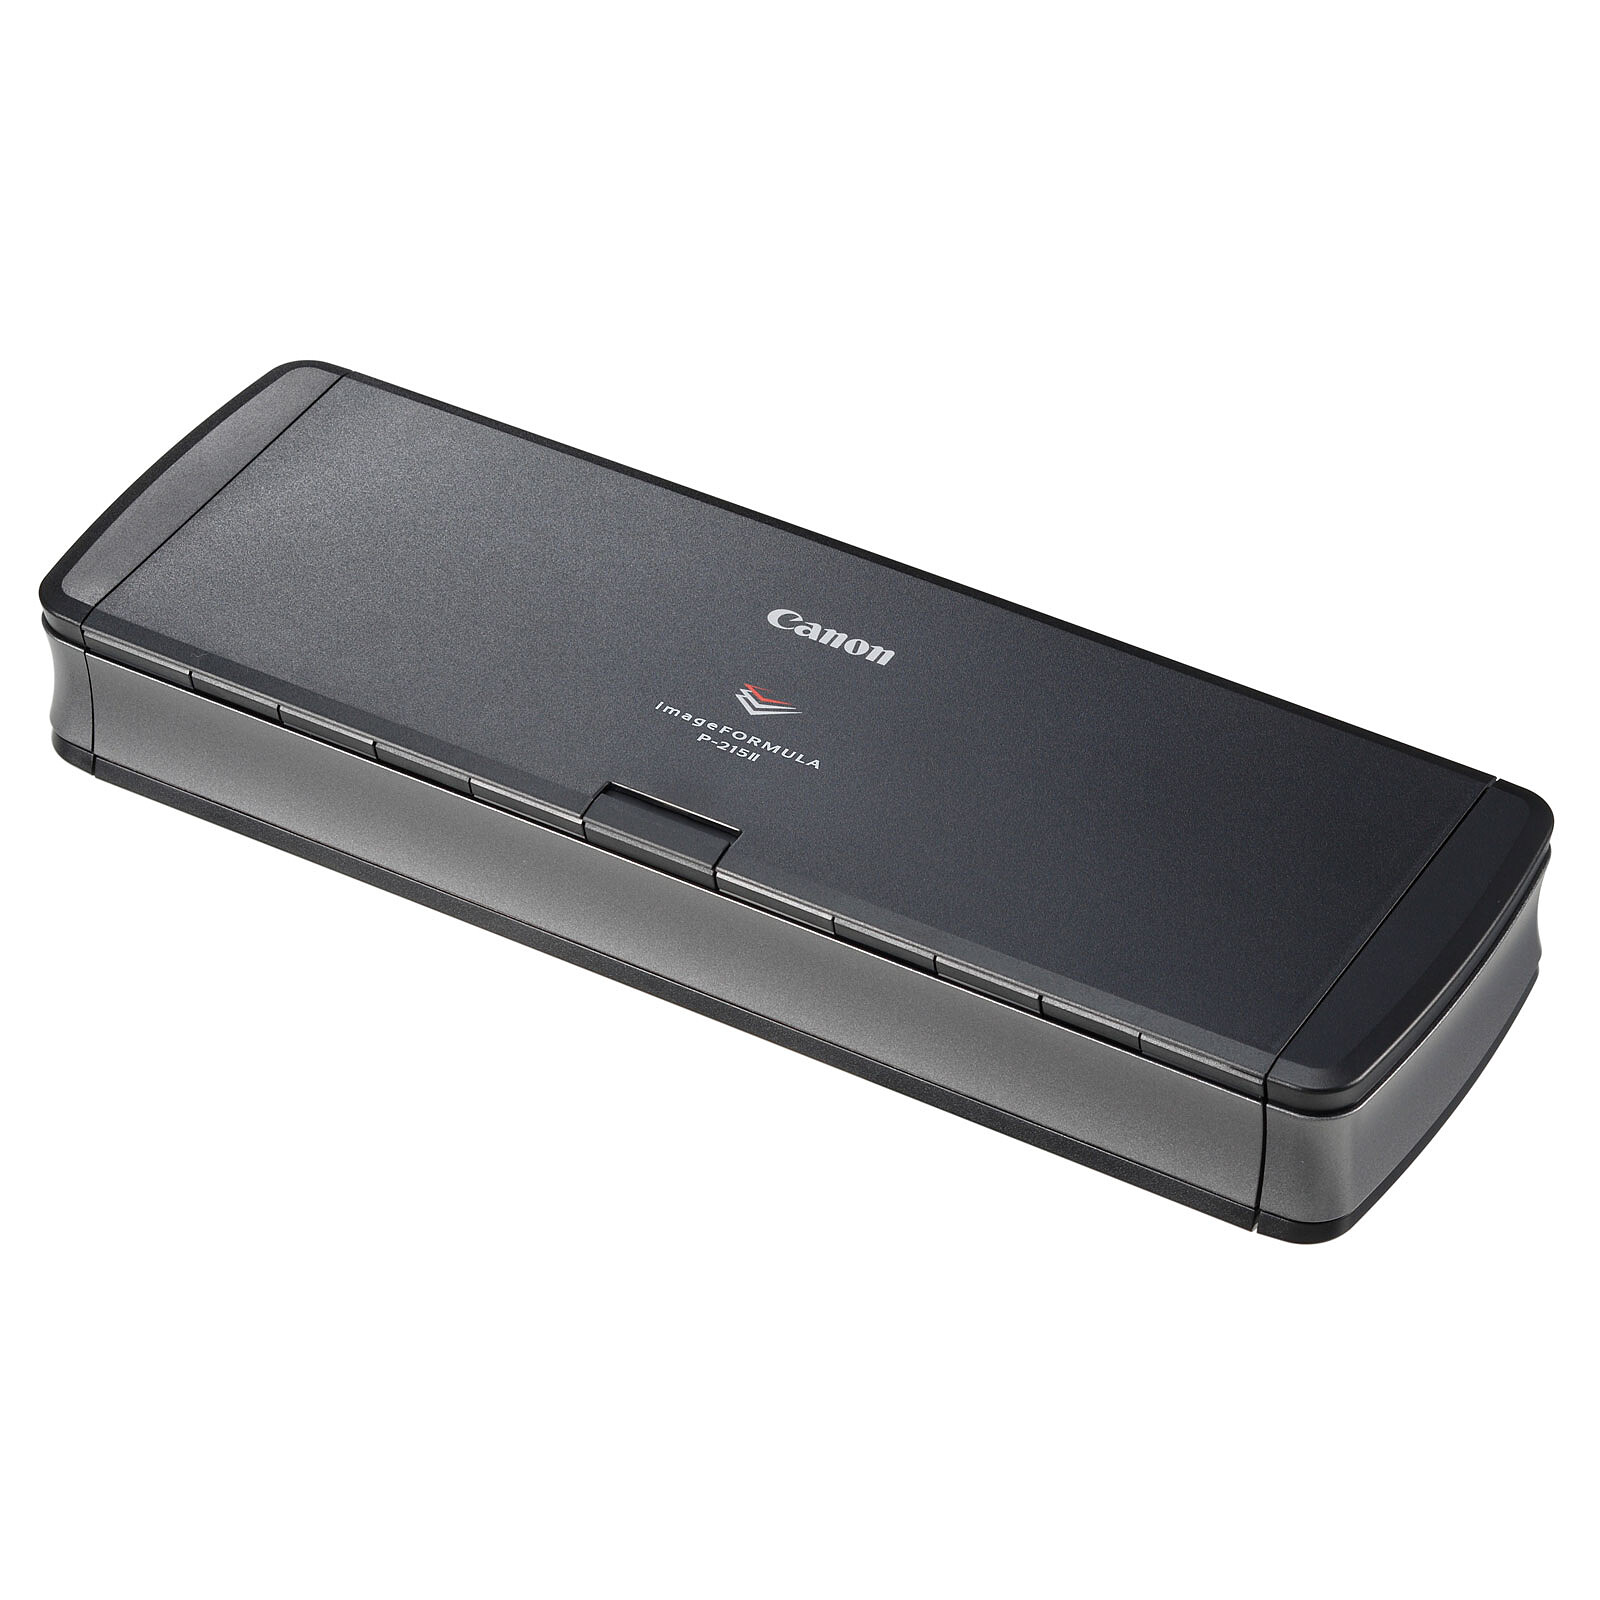 ES-50 Escaner de documentos portatil alimentado por hojas para PC